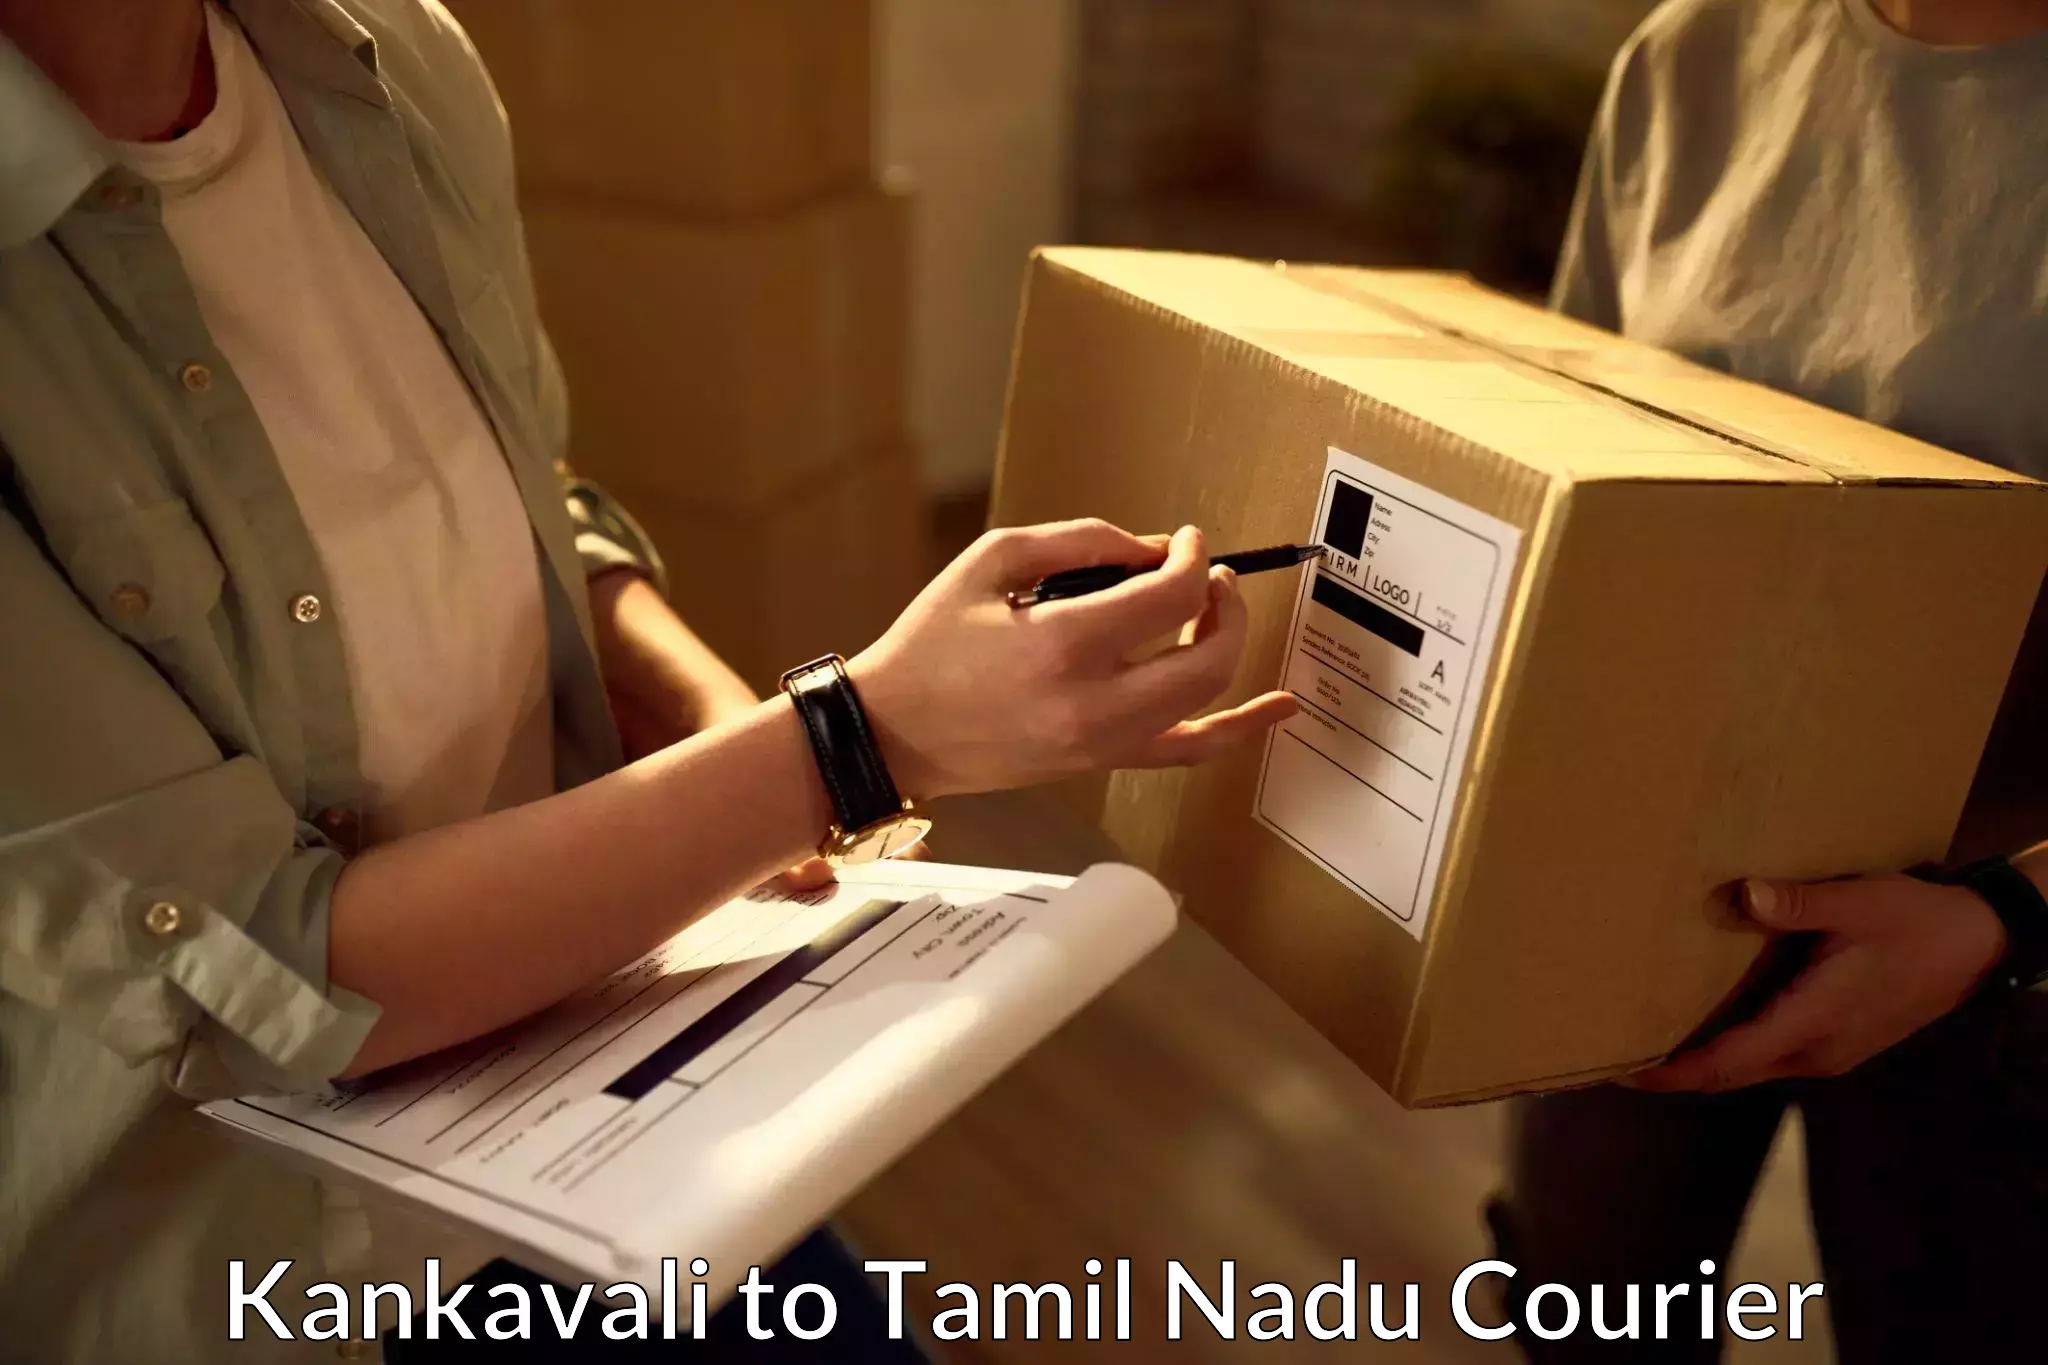 Courier membership Kankavali to Virudhunagar